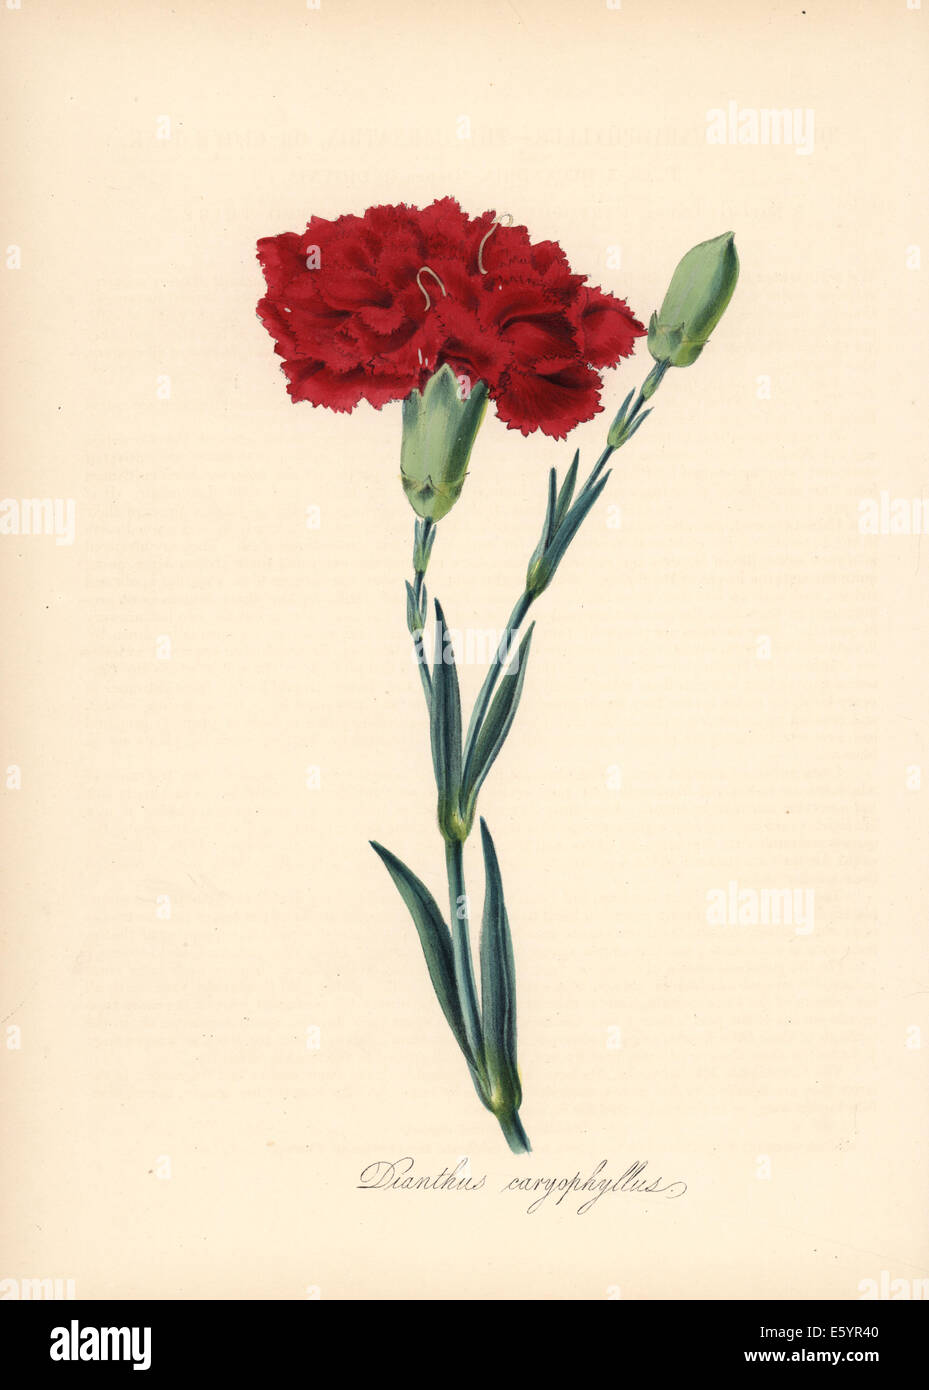 Carnation, Dianthus caryophyllus. Stock Photo